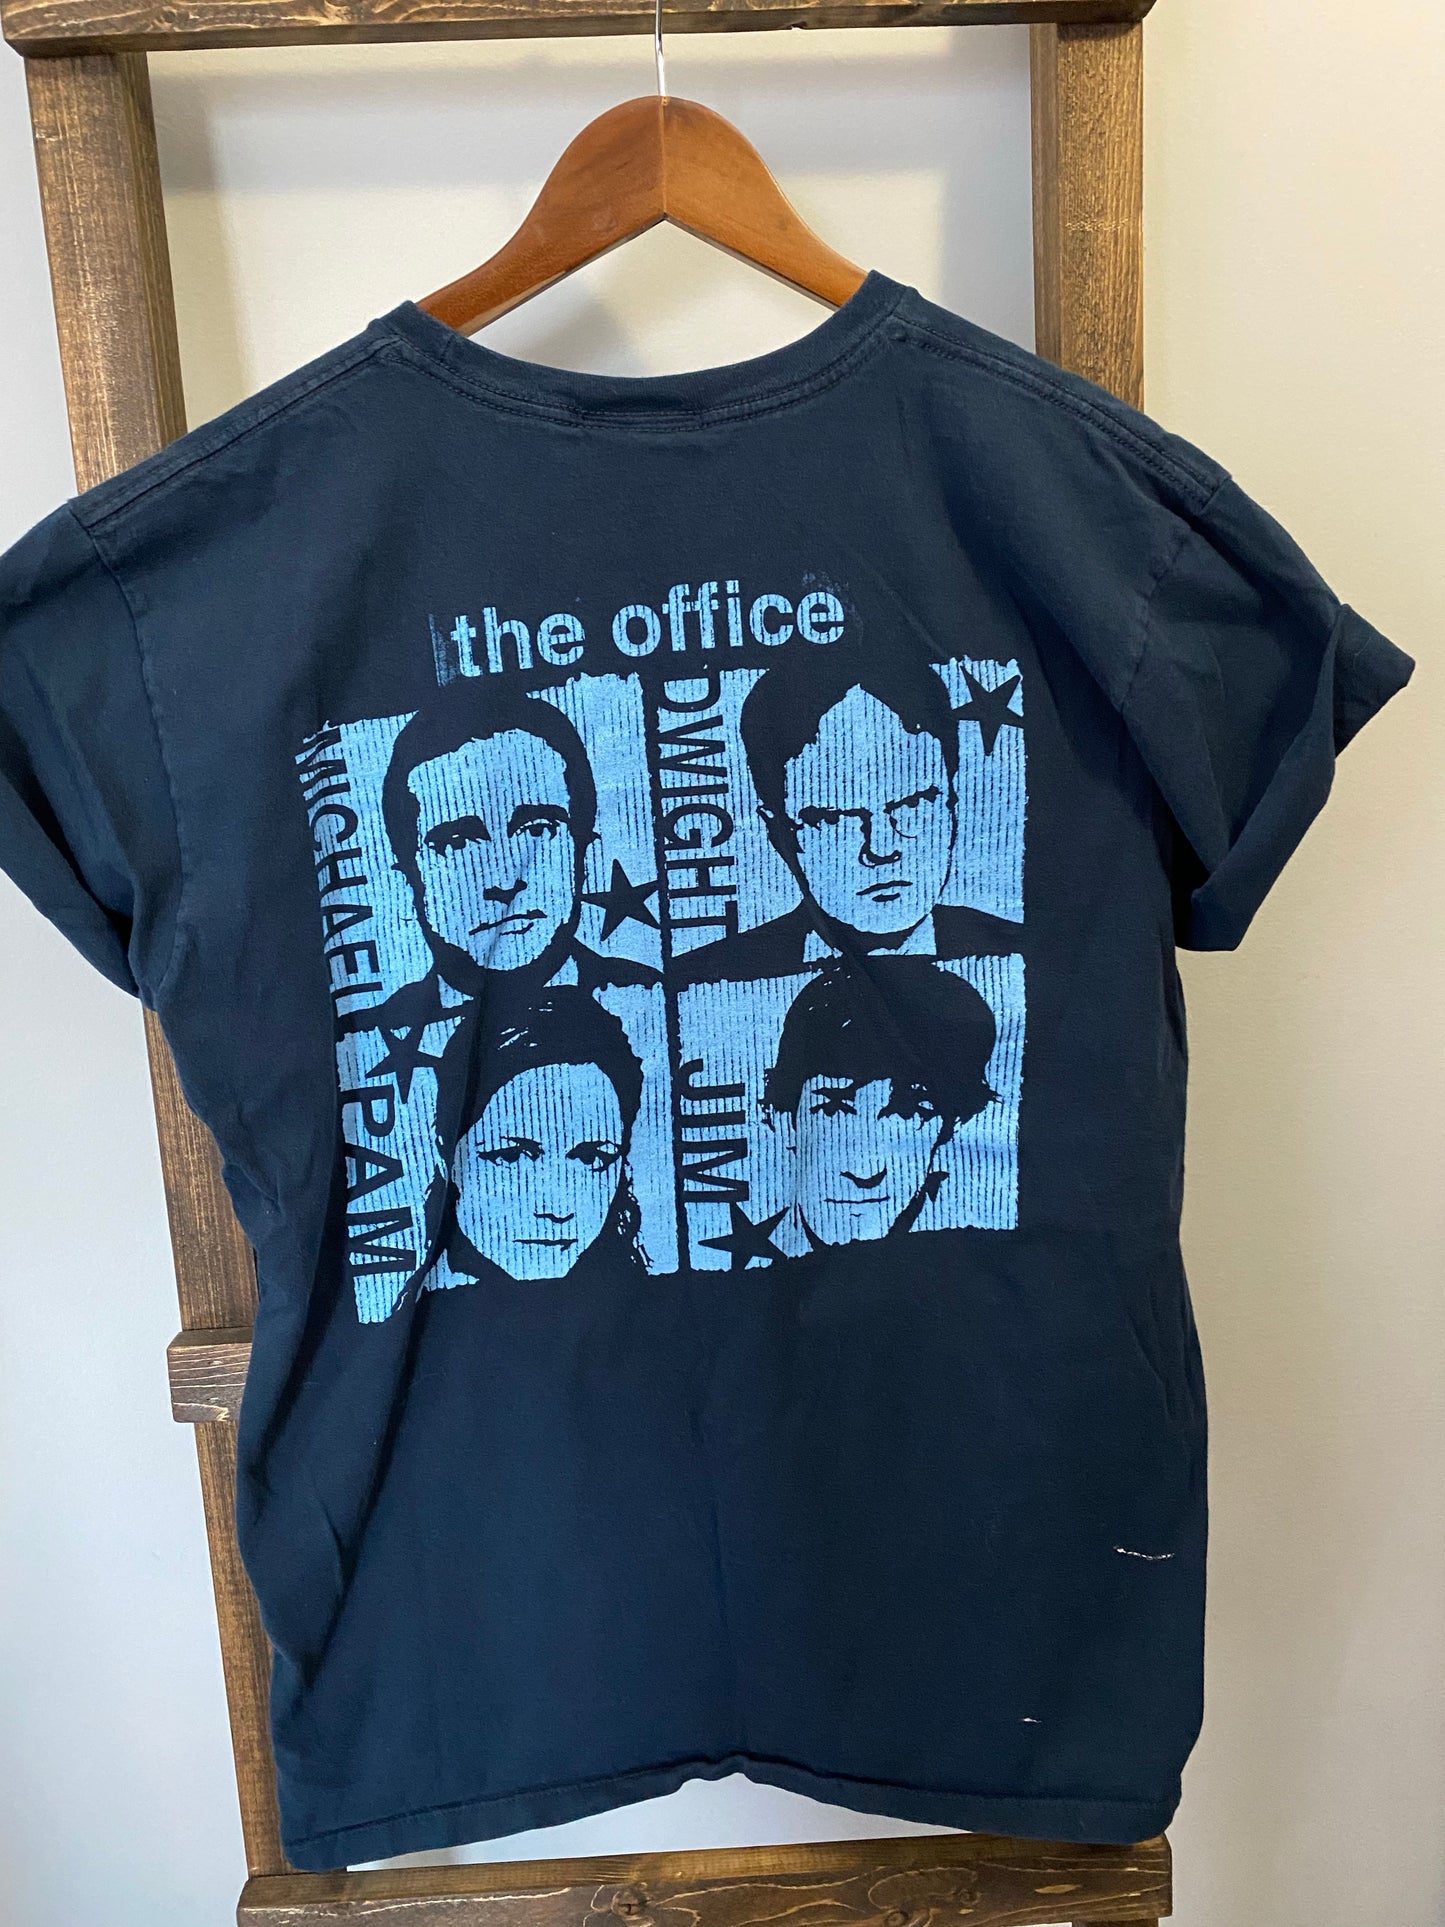 The Office “Dunder Mifflin” (Retro T-Shirt)